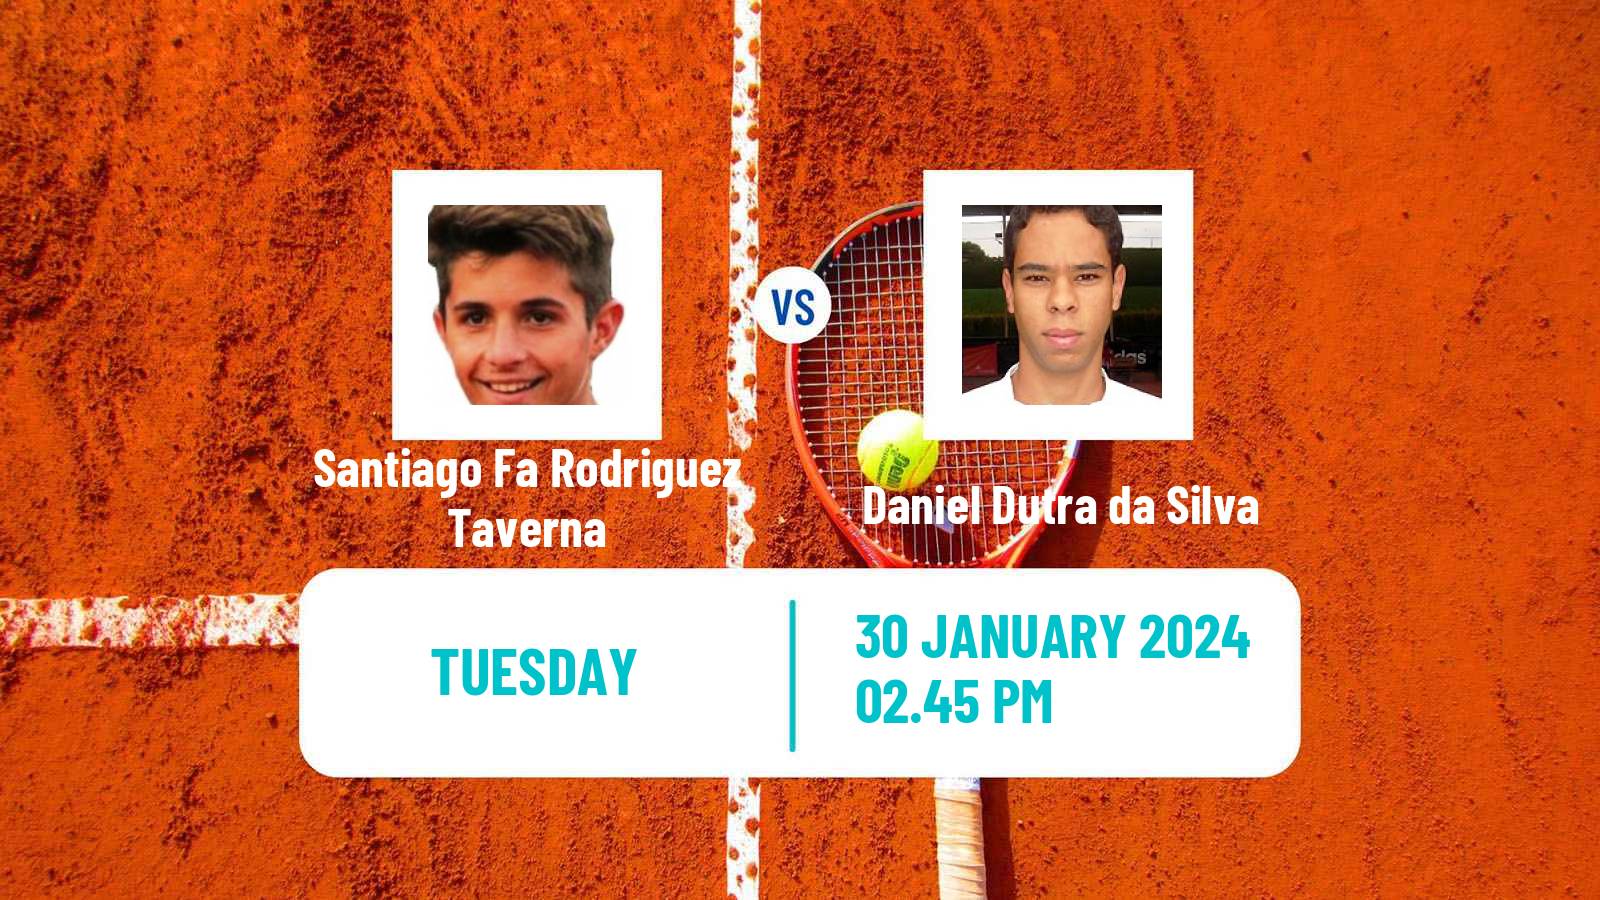 Tennis Piracicaba Challenger Men Santiago Fa Rodriguez Taverna - Daniel Dutra da Silva